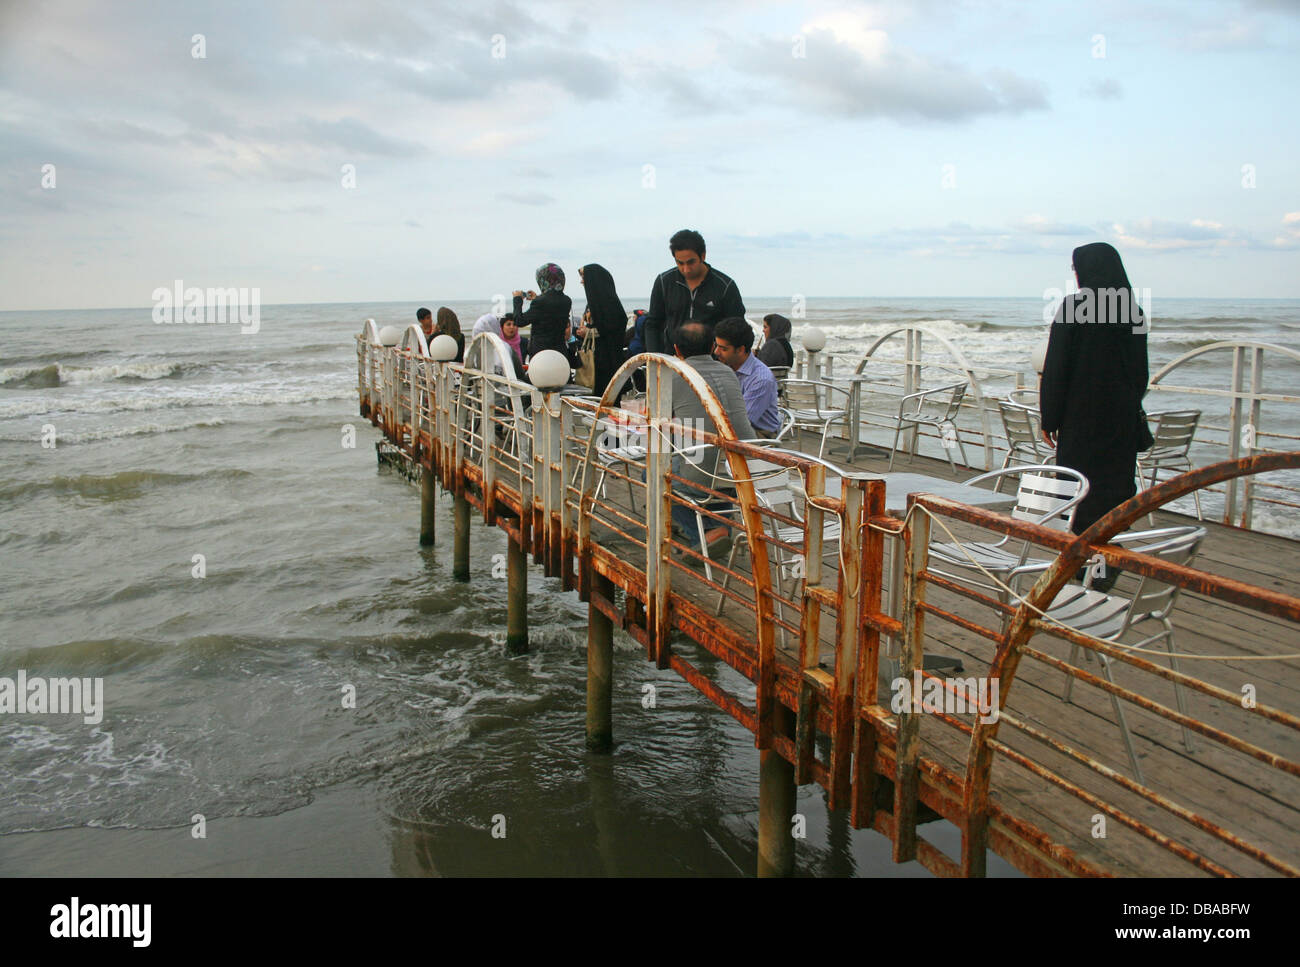 Relaxing times in Caspian Sea, Iran Stock Photo